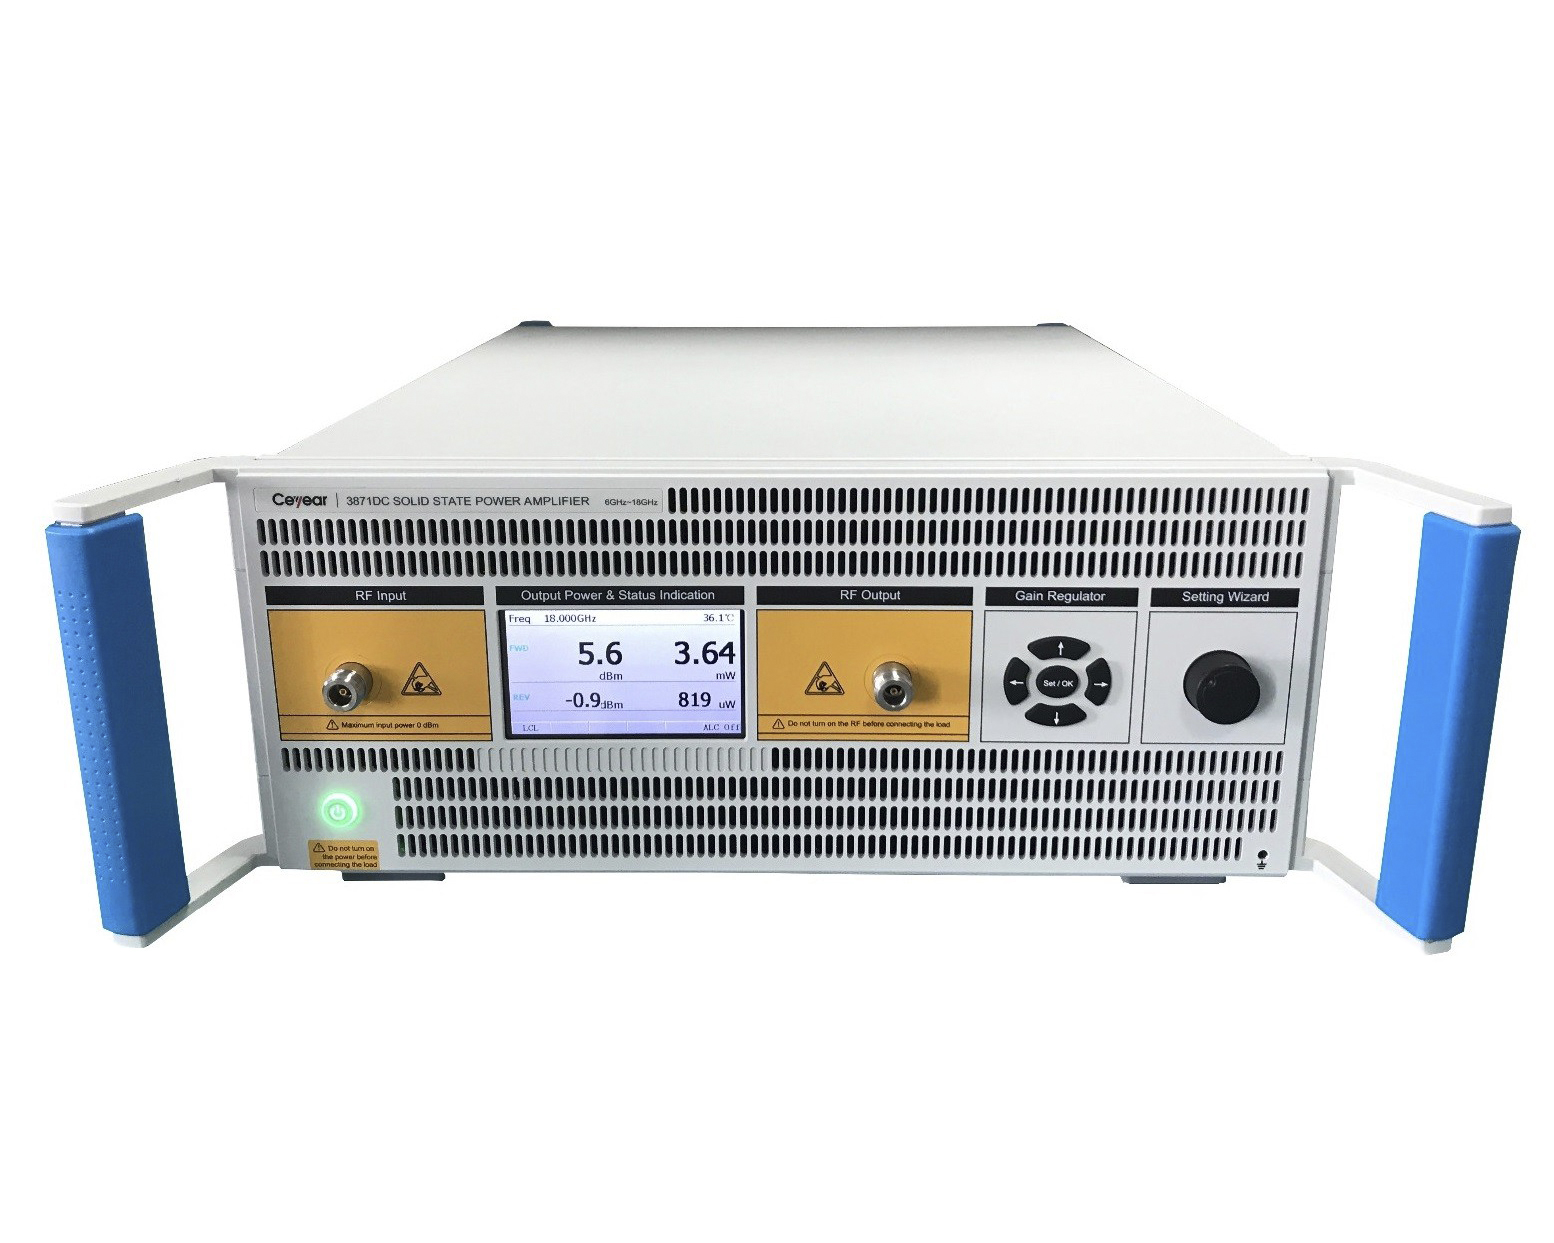 Твердотельные усилители мощностиCeyear серии 387XXс диапазоном частот от 9 кГц до 110 ГГц